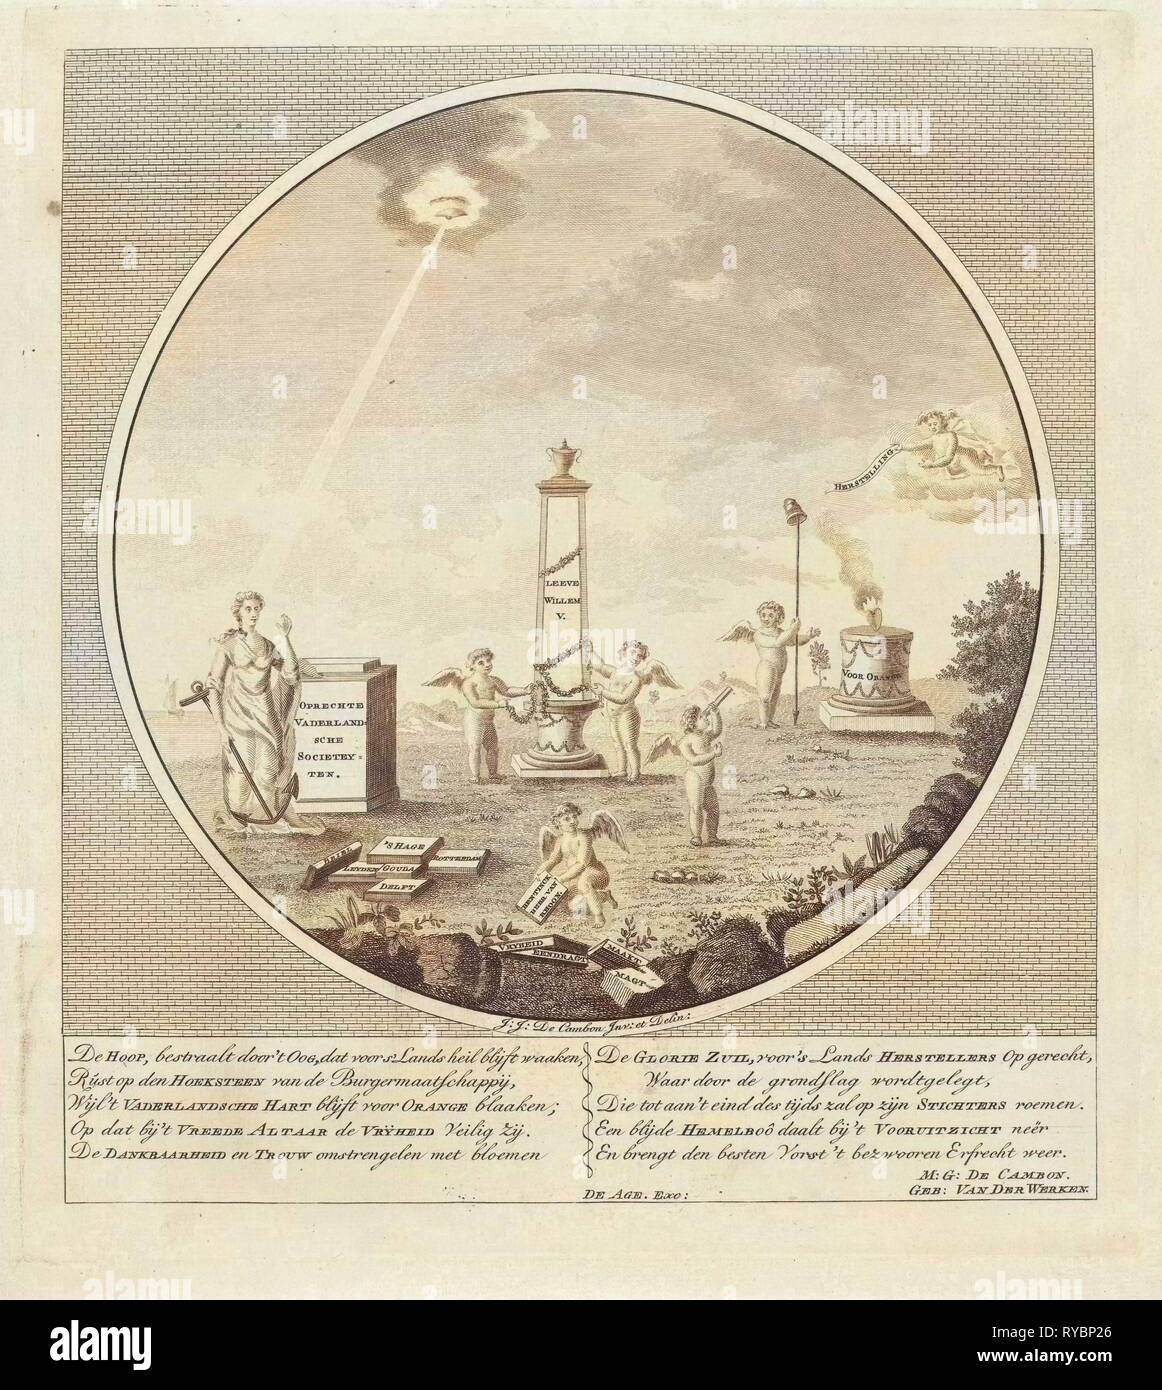 Allegoria sulla creazione del Oprechte Vaderlandsche Societeiten nel 1787, anonimo, Maria Geertruida de Cambon-van der Werken, Johannes François Jacobs de Agé, 1787 Foto Stock